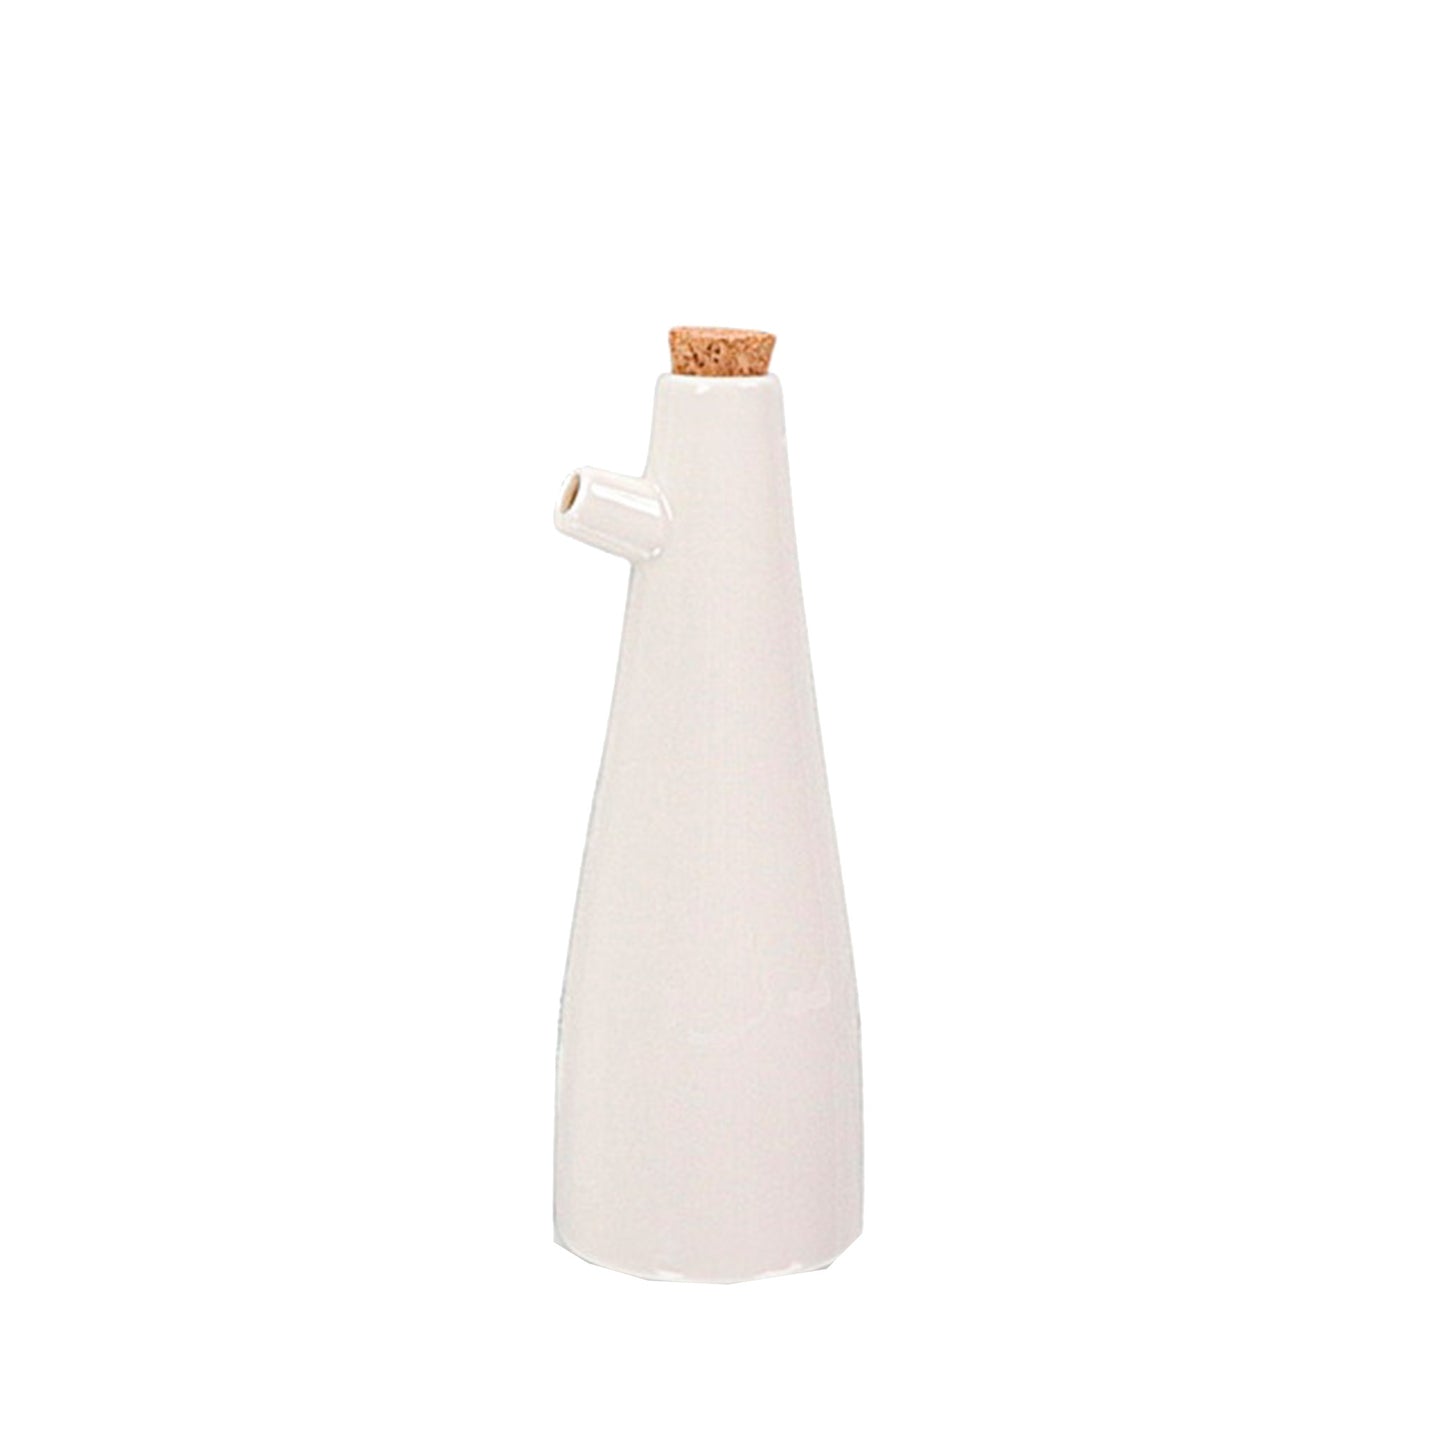 Ceramic Long Oil Bottles